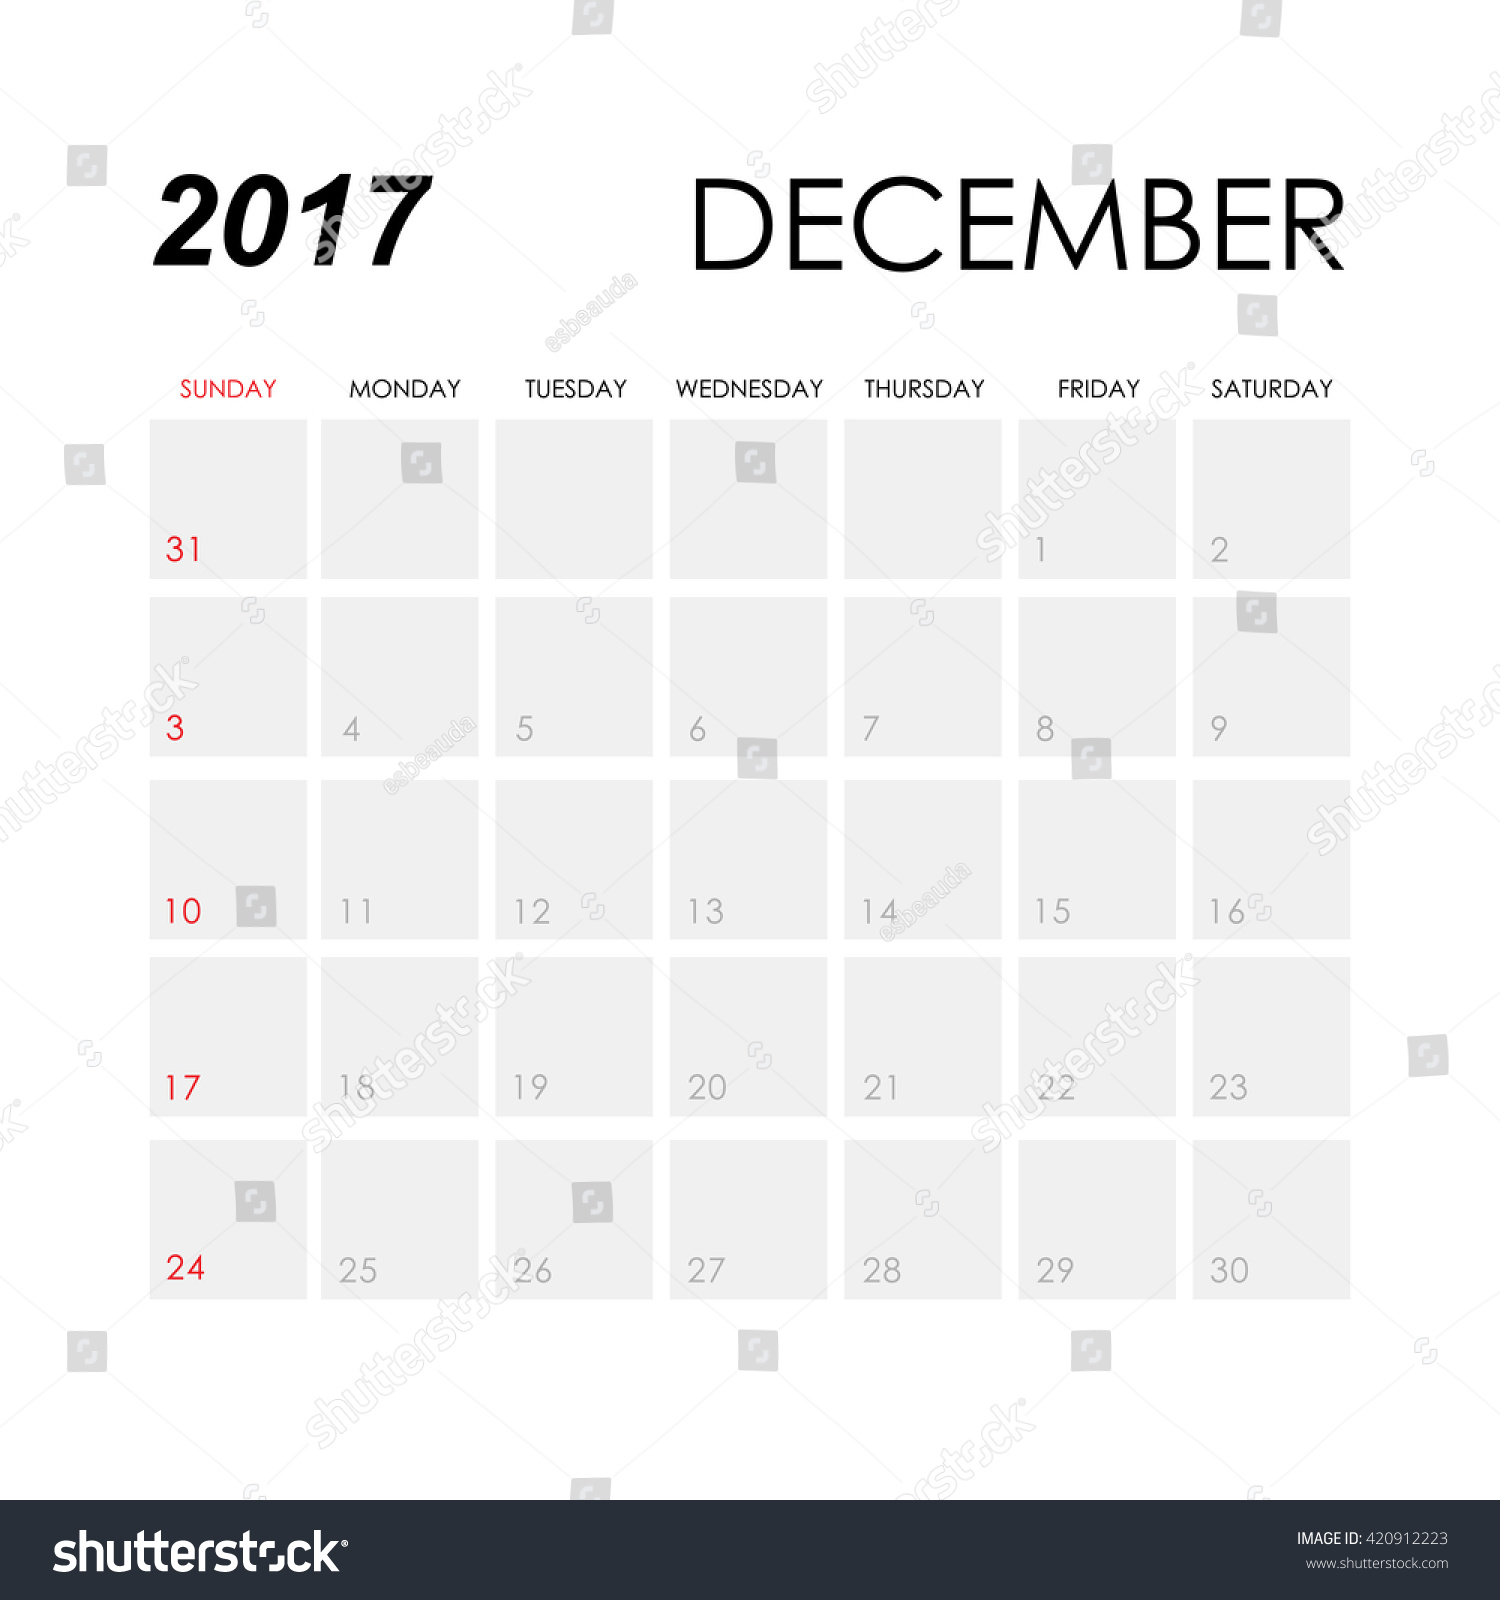 Template Calendar December 2017 Stock Vector 420912223 - Shutterstock